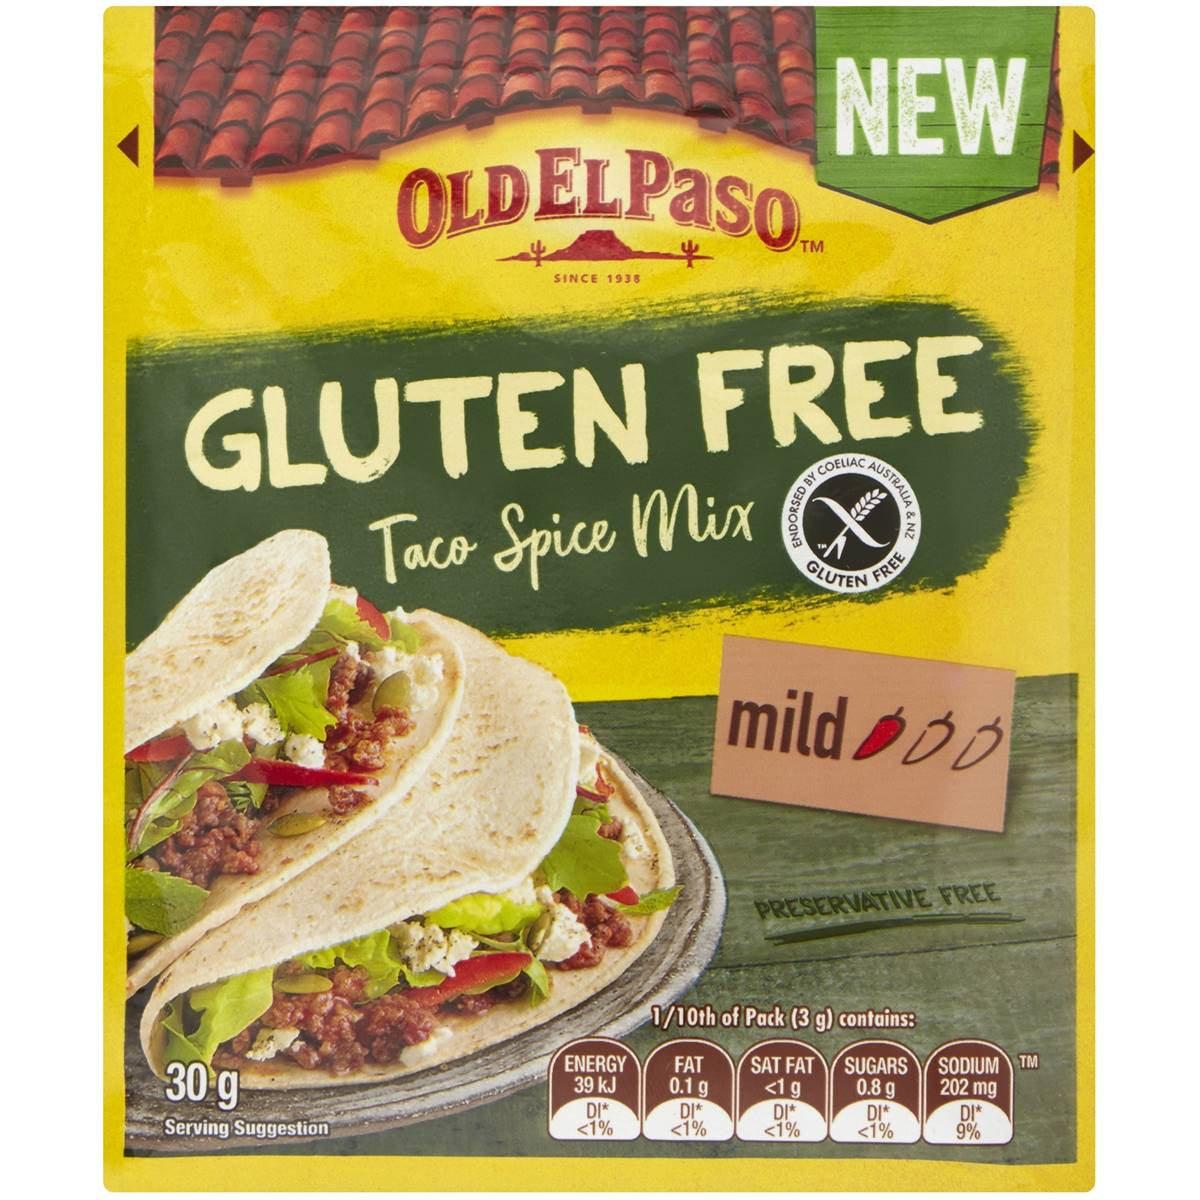 Old El Paso Gluten Free Taco Spice Mix